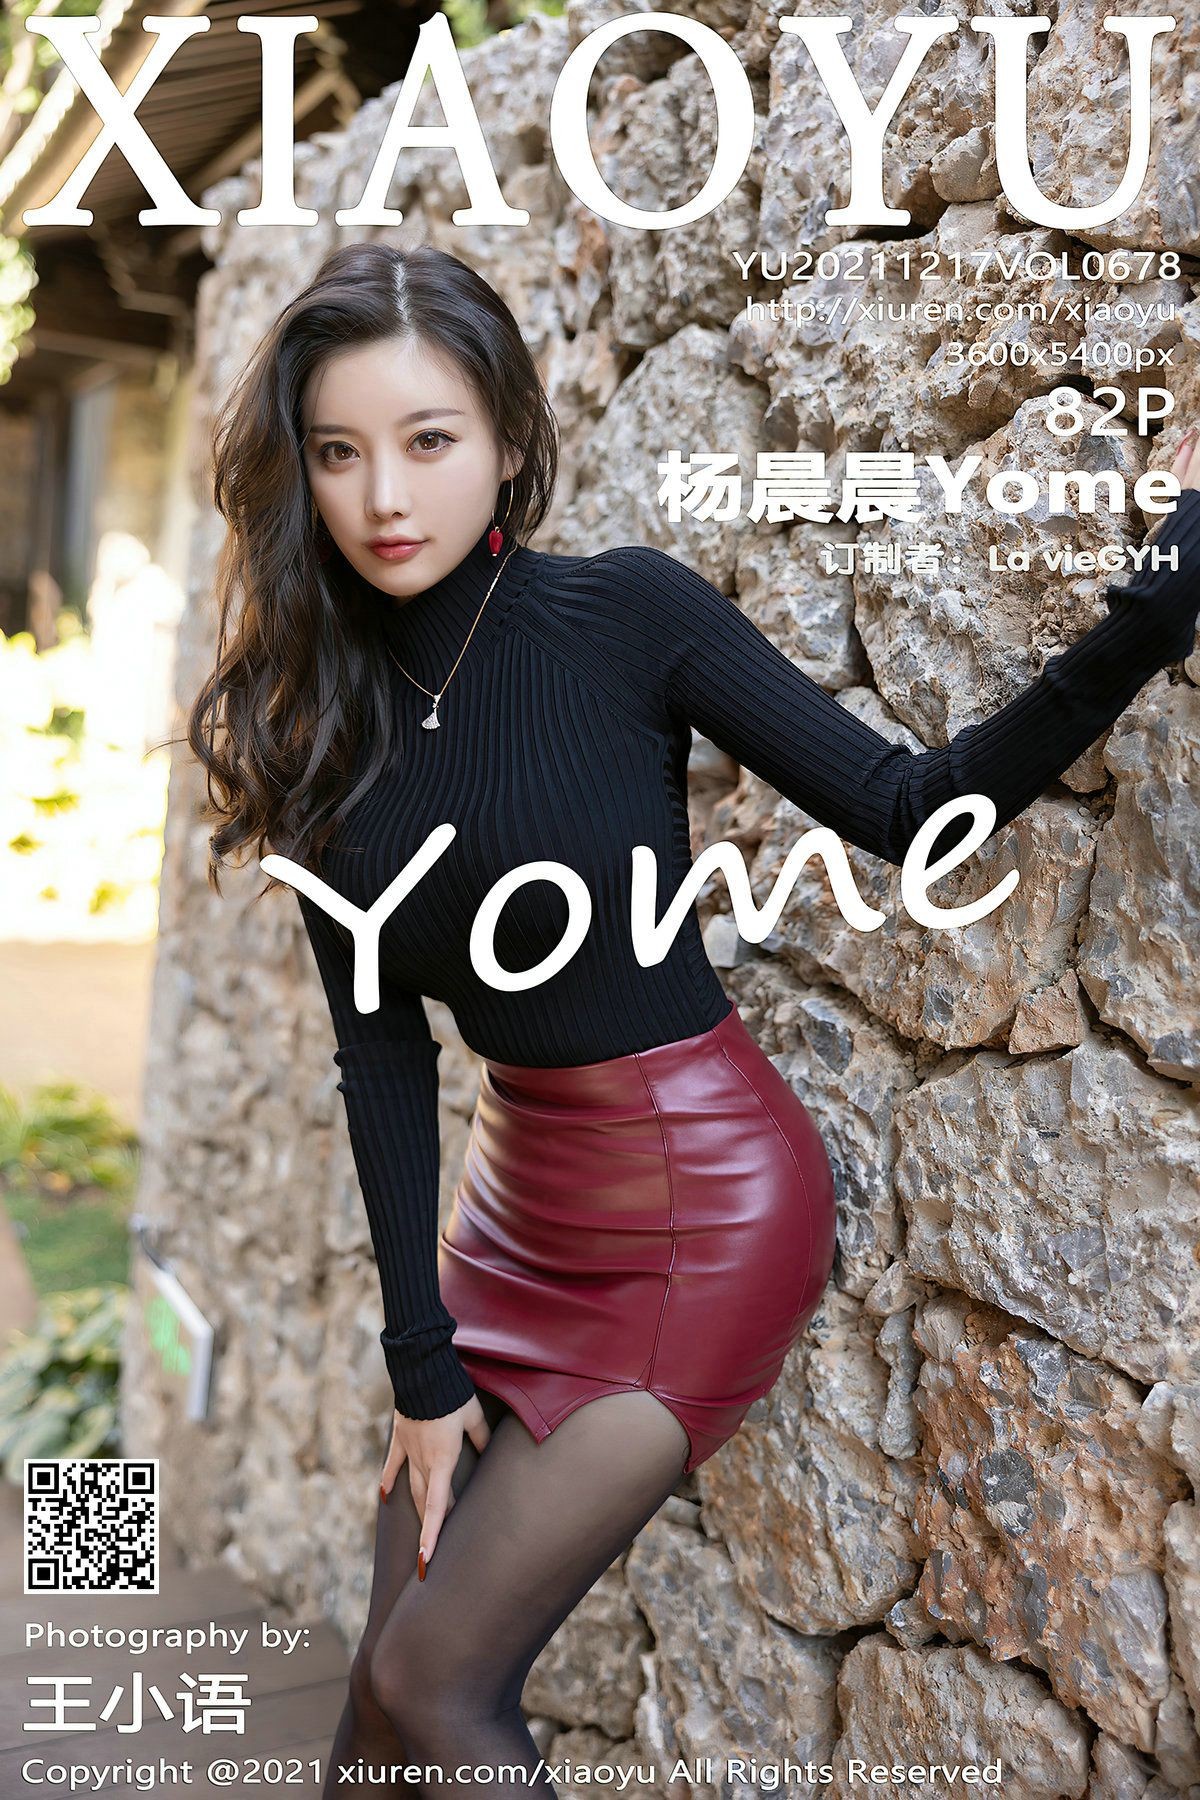 XIAOYU语画界性感模特写真第Vol.678期杨晨晨Yome (84)